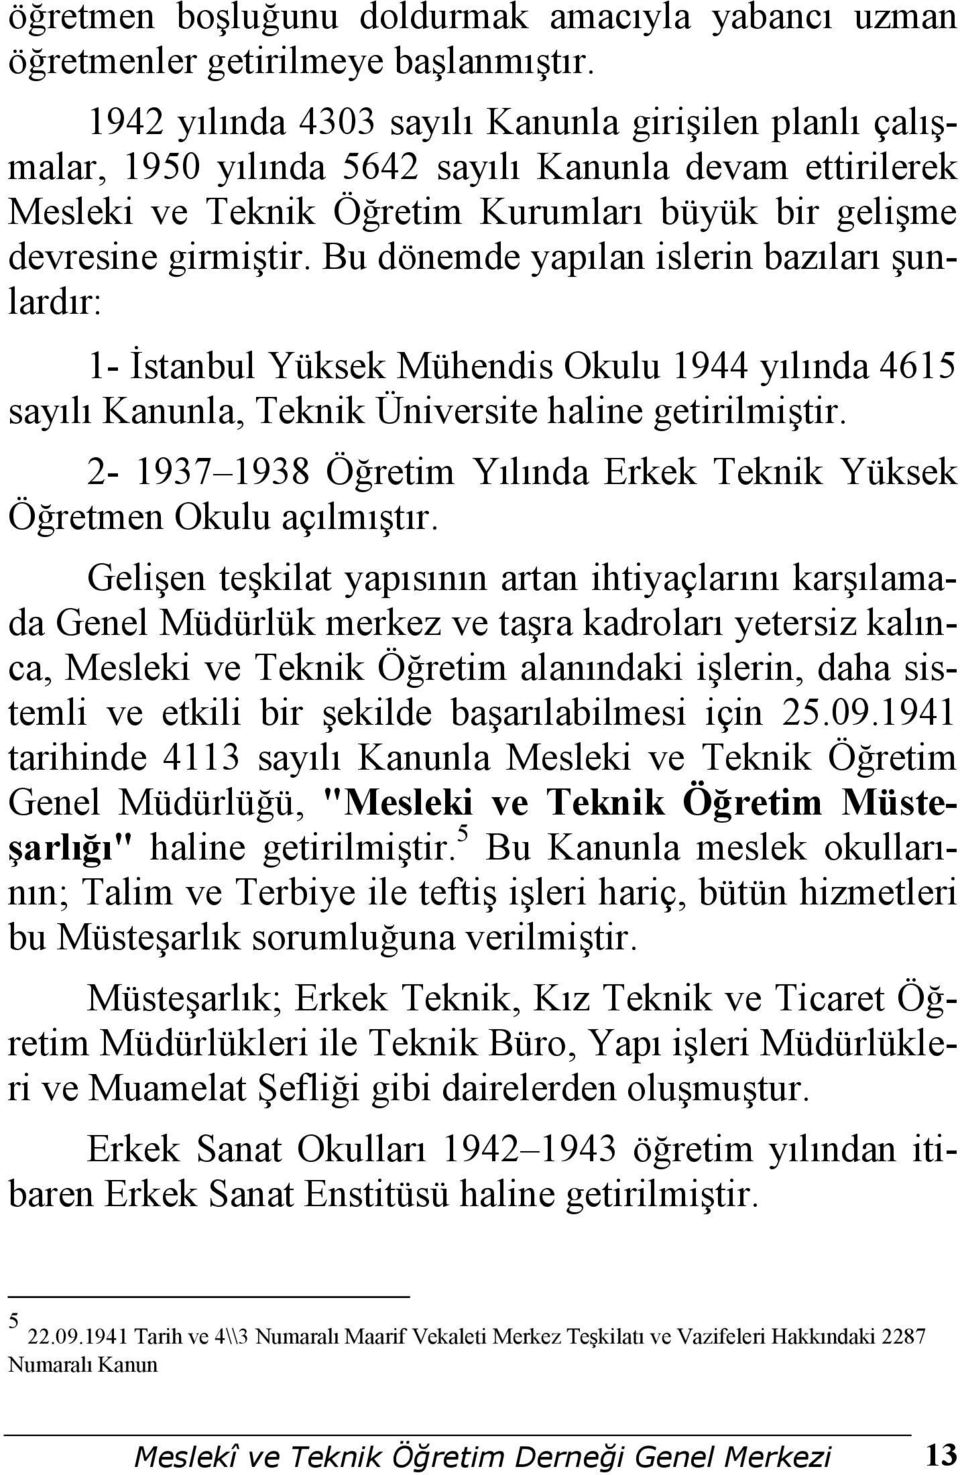 Bu dönemde yapılan islerin bazıları şunlardır: 1- Đstanbul Yüksek Mühendis Okulu 1944 yılında 4615 sayılı Kanunla, Teknik Üniversite haline getirilmiştir.